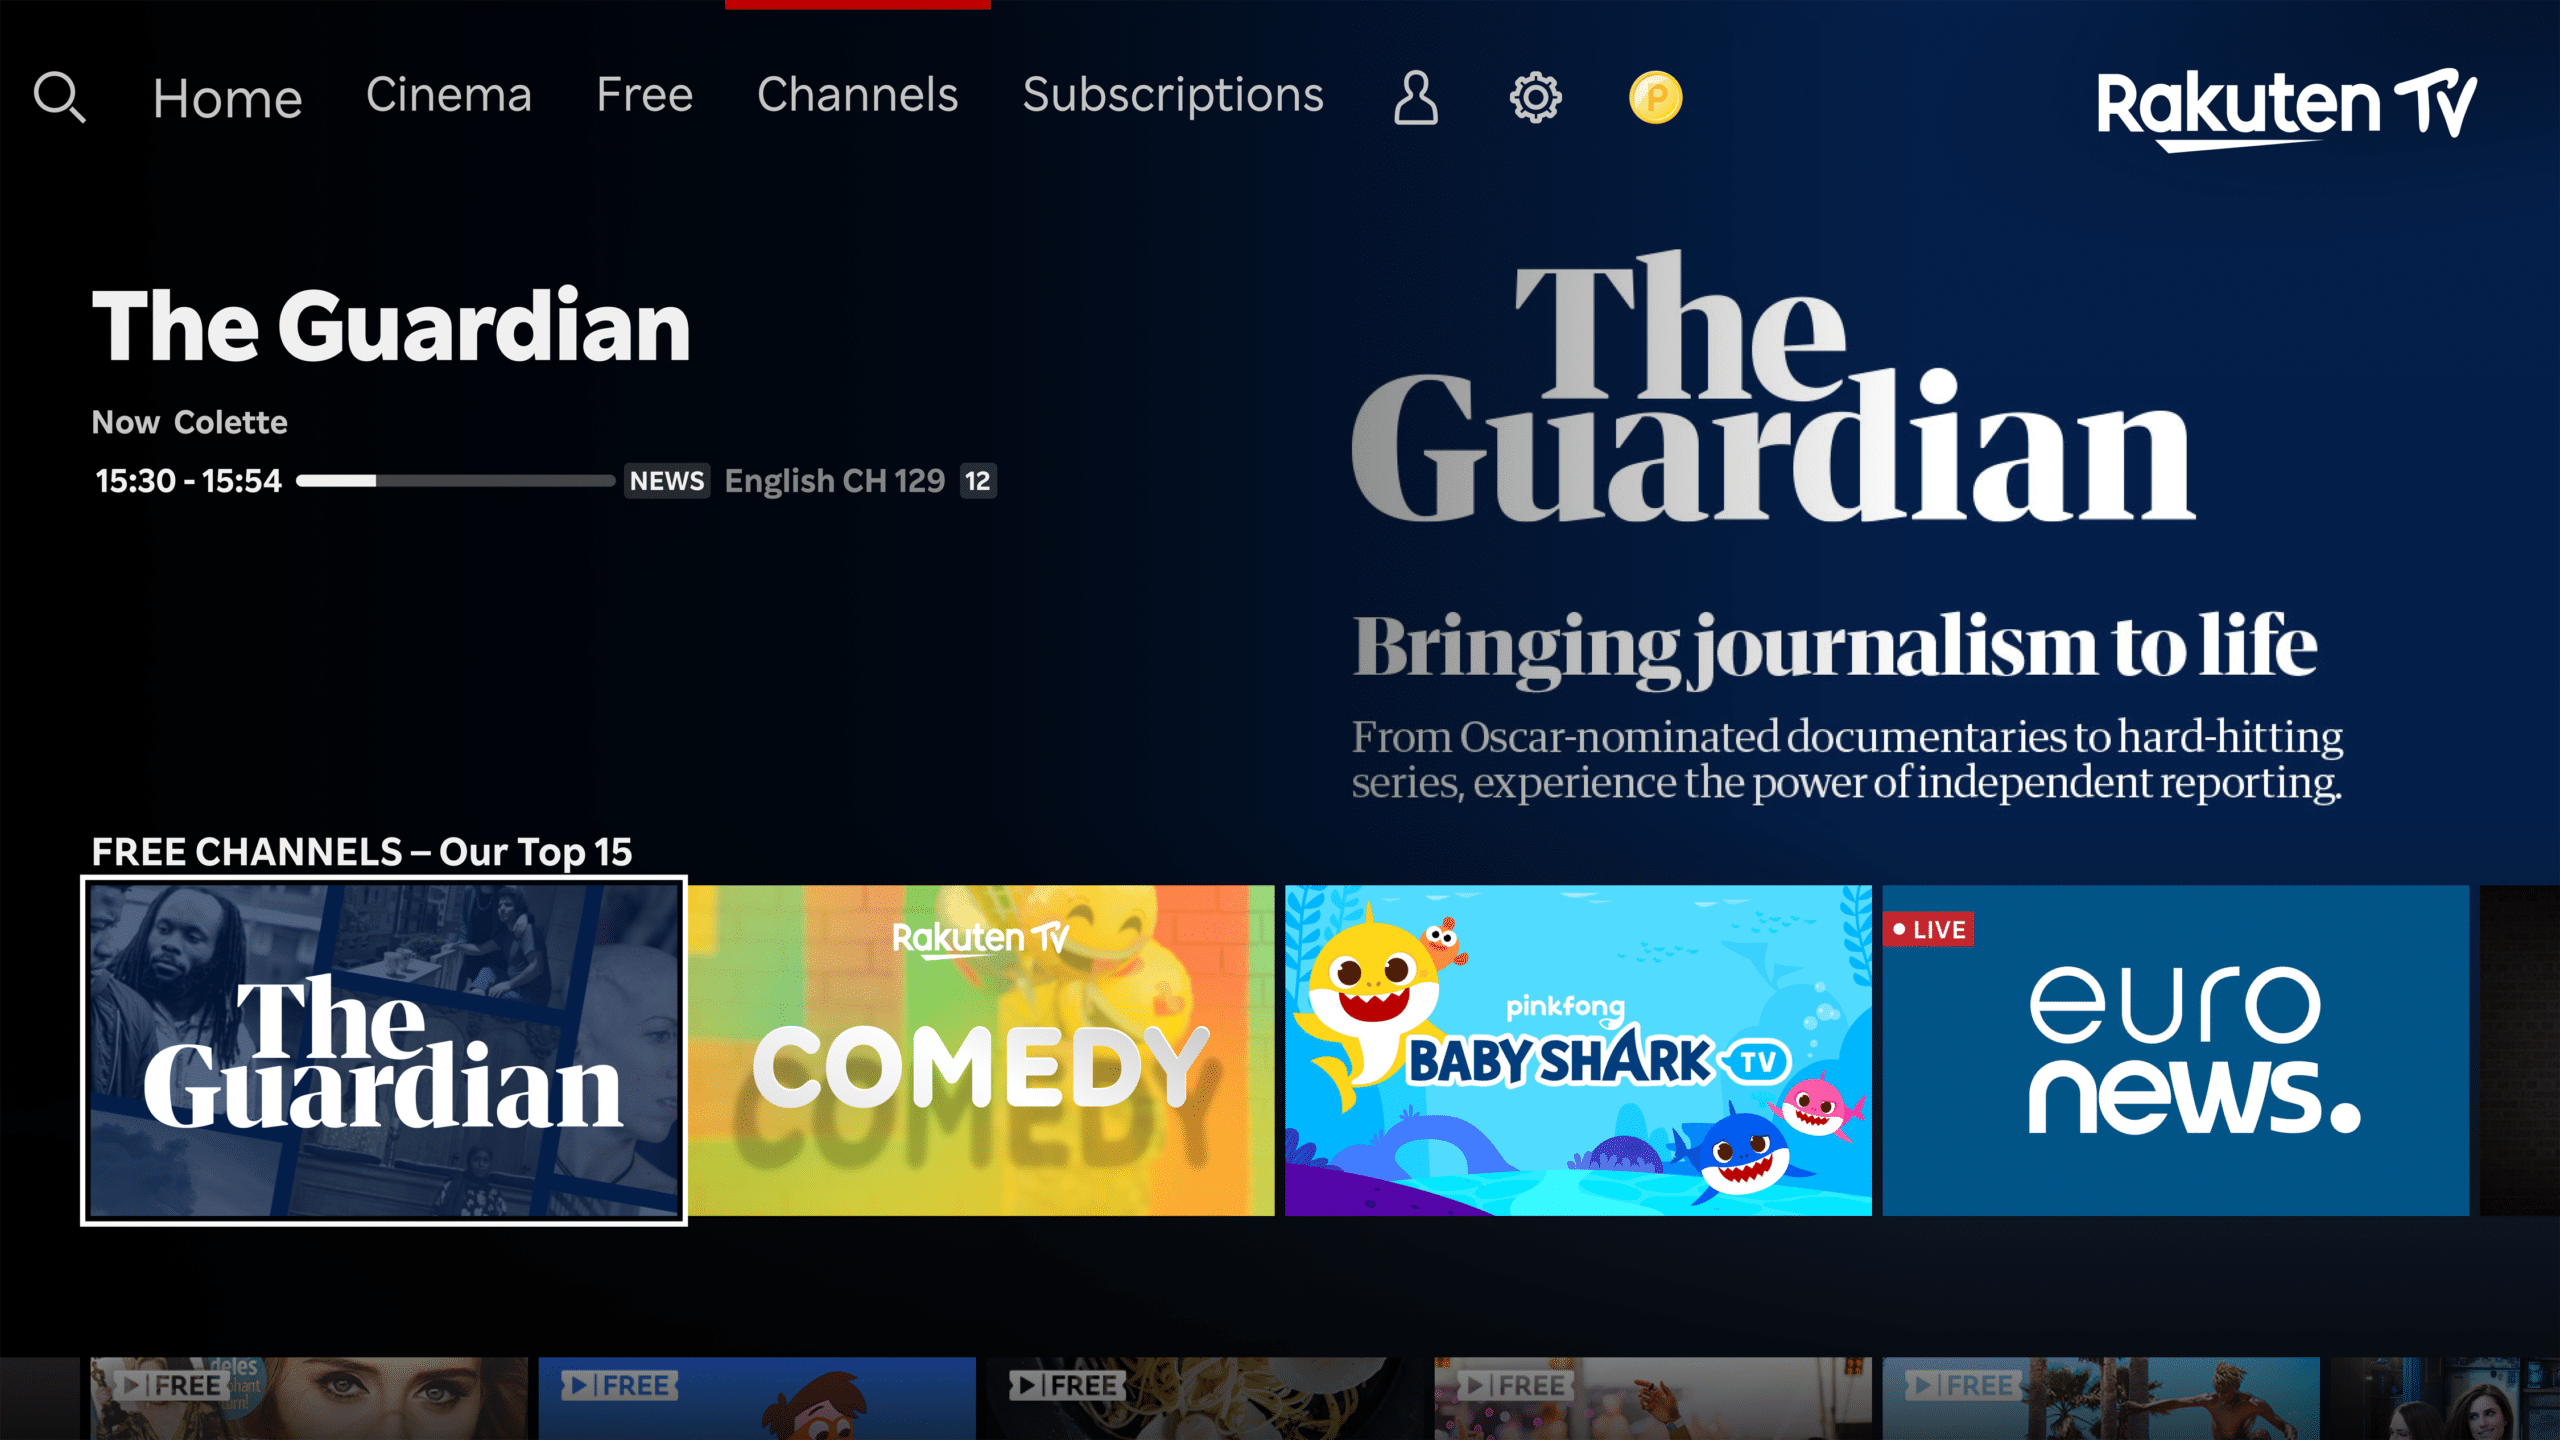 Su Rakuten TV il canale brandizzato The Guardian thumbnail